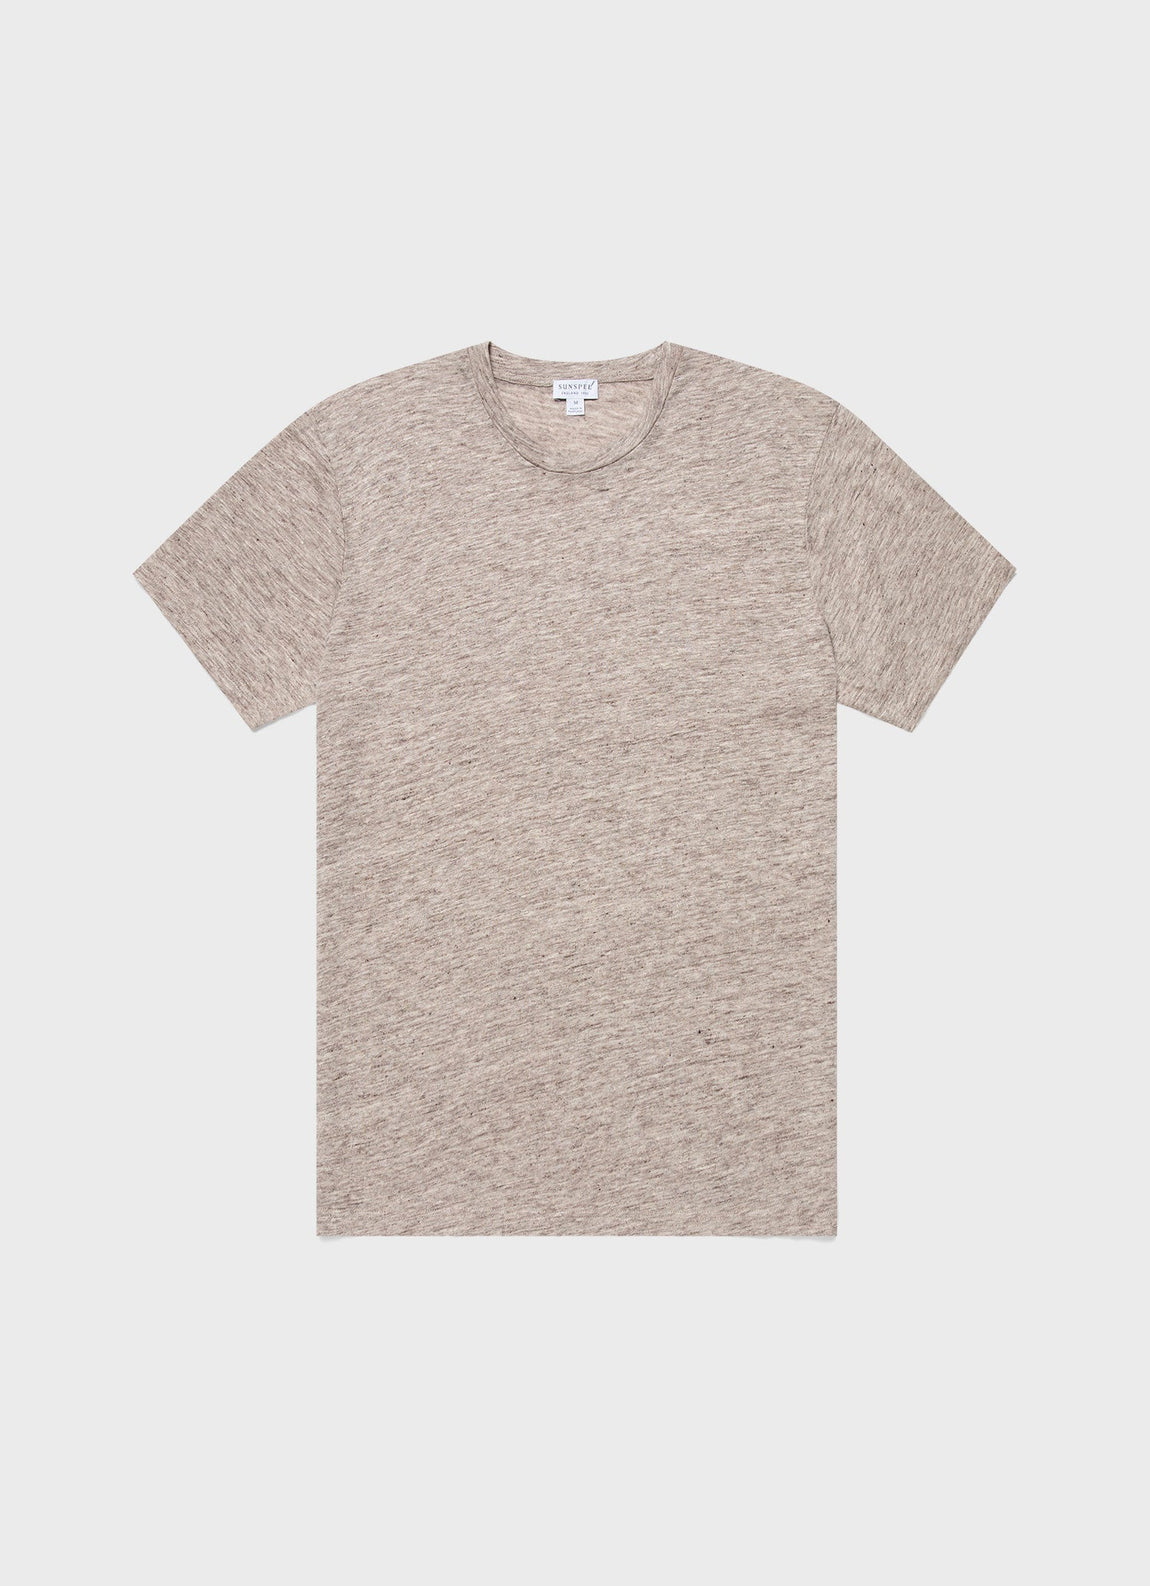 Men's Linen T-shirt in Oatmeal Melange